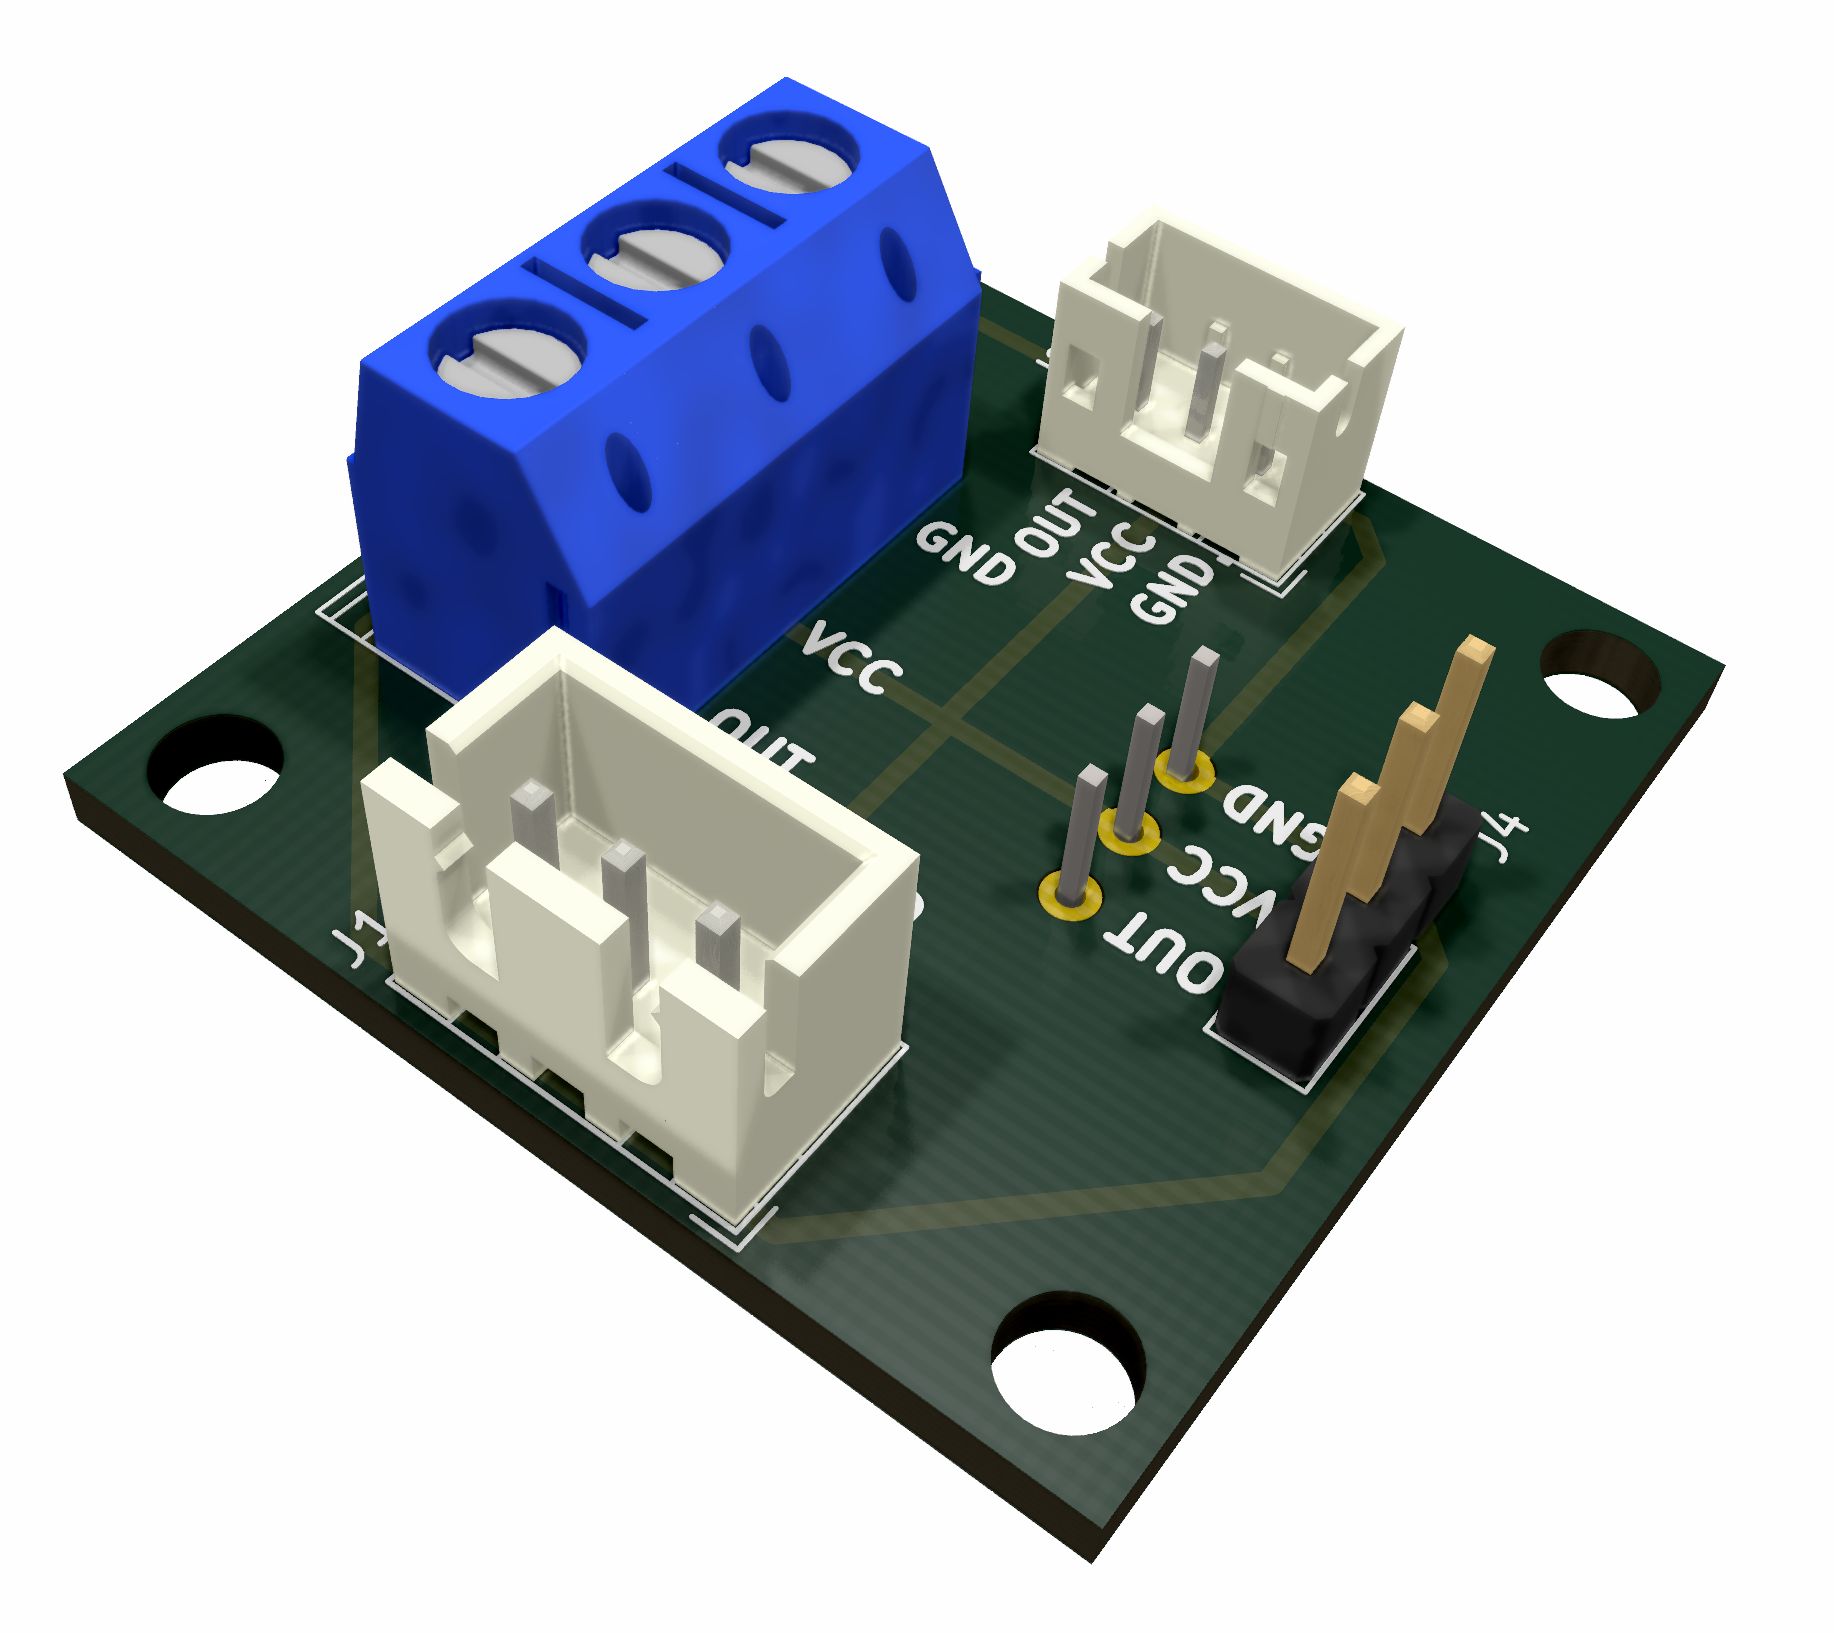 Beweging sensor infrarood mini PIR-MH-SR602 PCB version 02